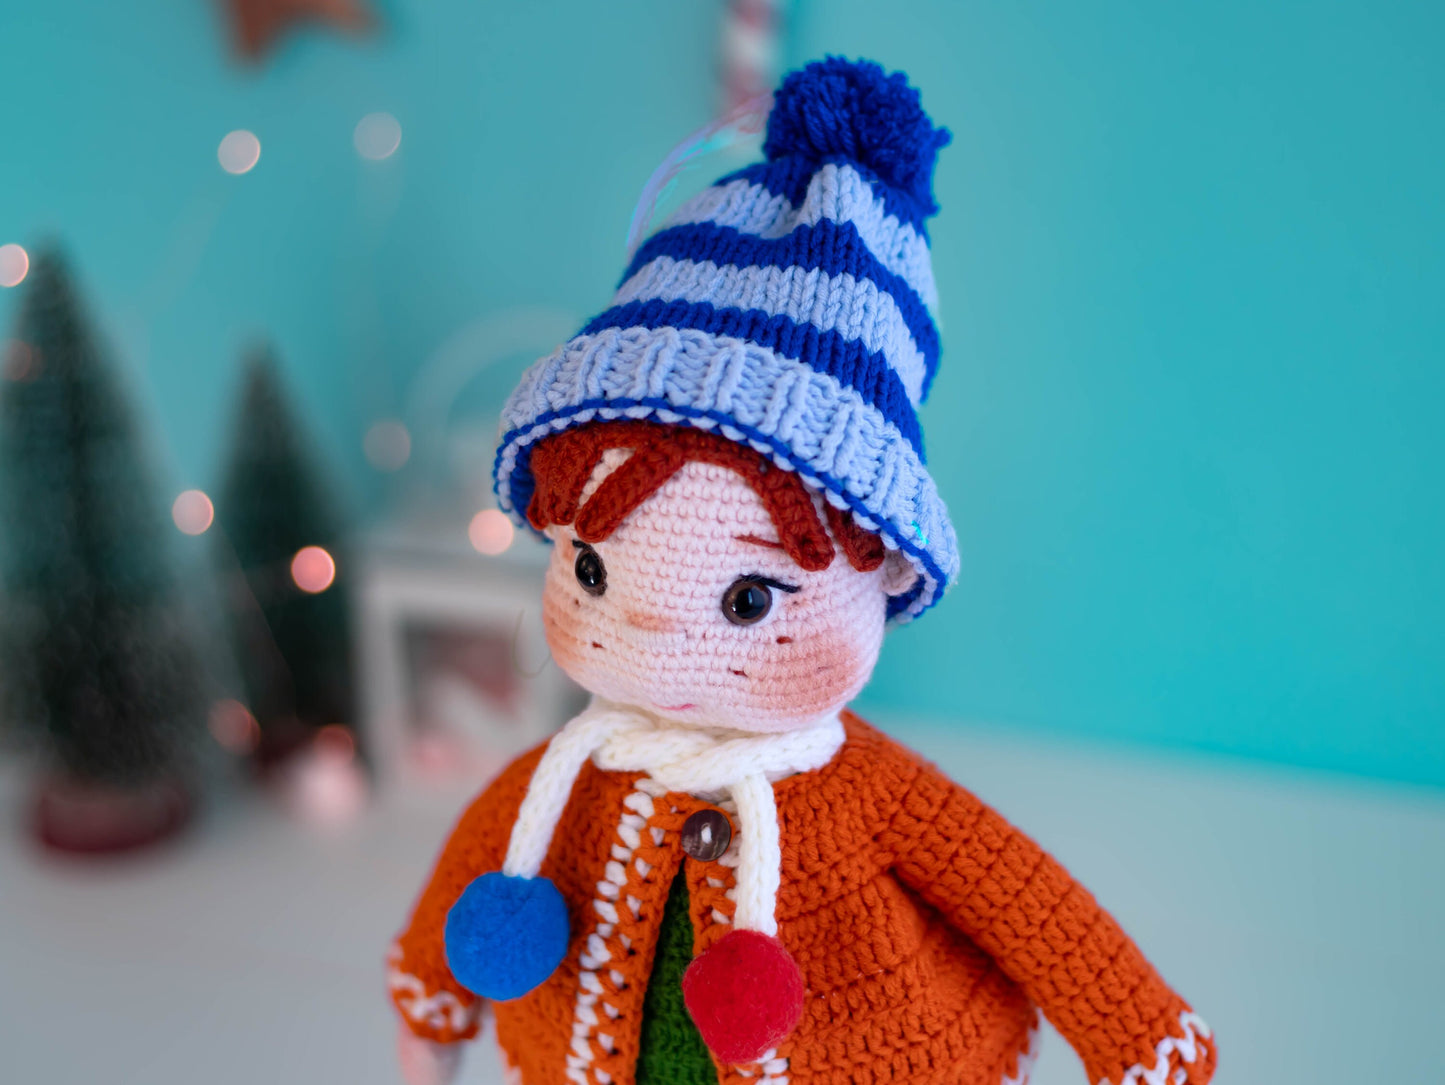 Amigurumi Boy Dale, Crochet Doll Boy, Knit Boy Doll, Toddler Gift, Crochet Doll Amigurumi, Nephew Gifts, Handmade Doll, Hand Made Doll Cute